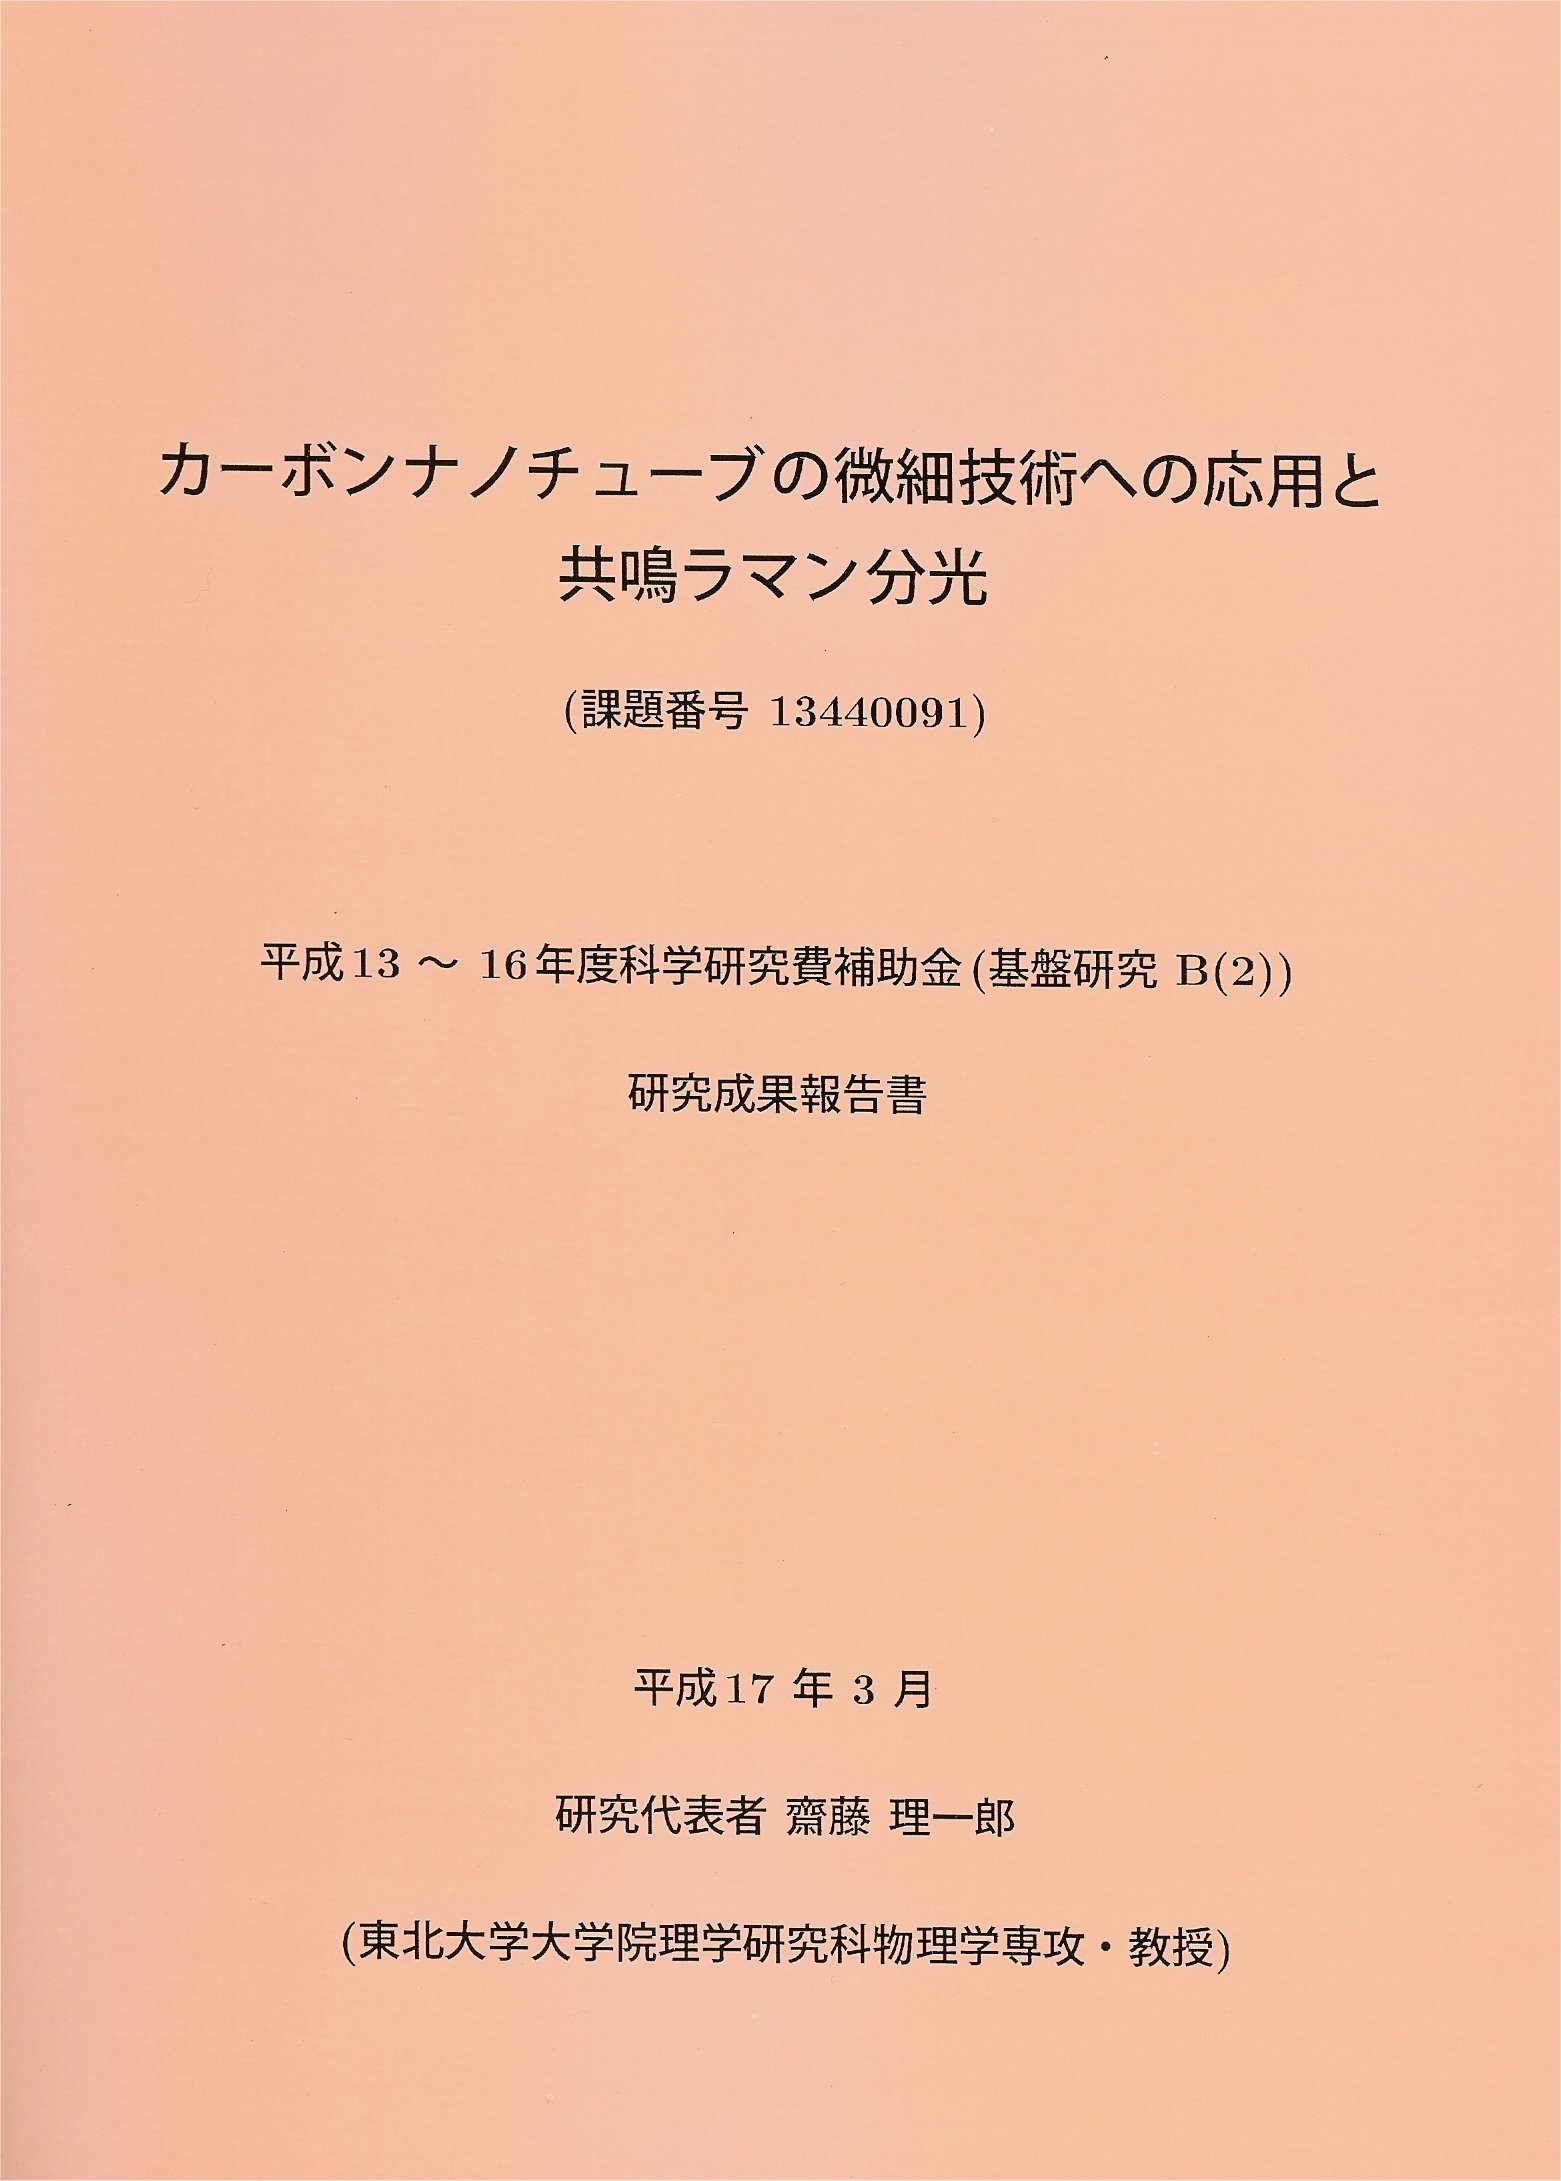 Report of Kakenhi 2005